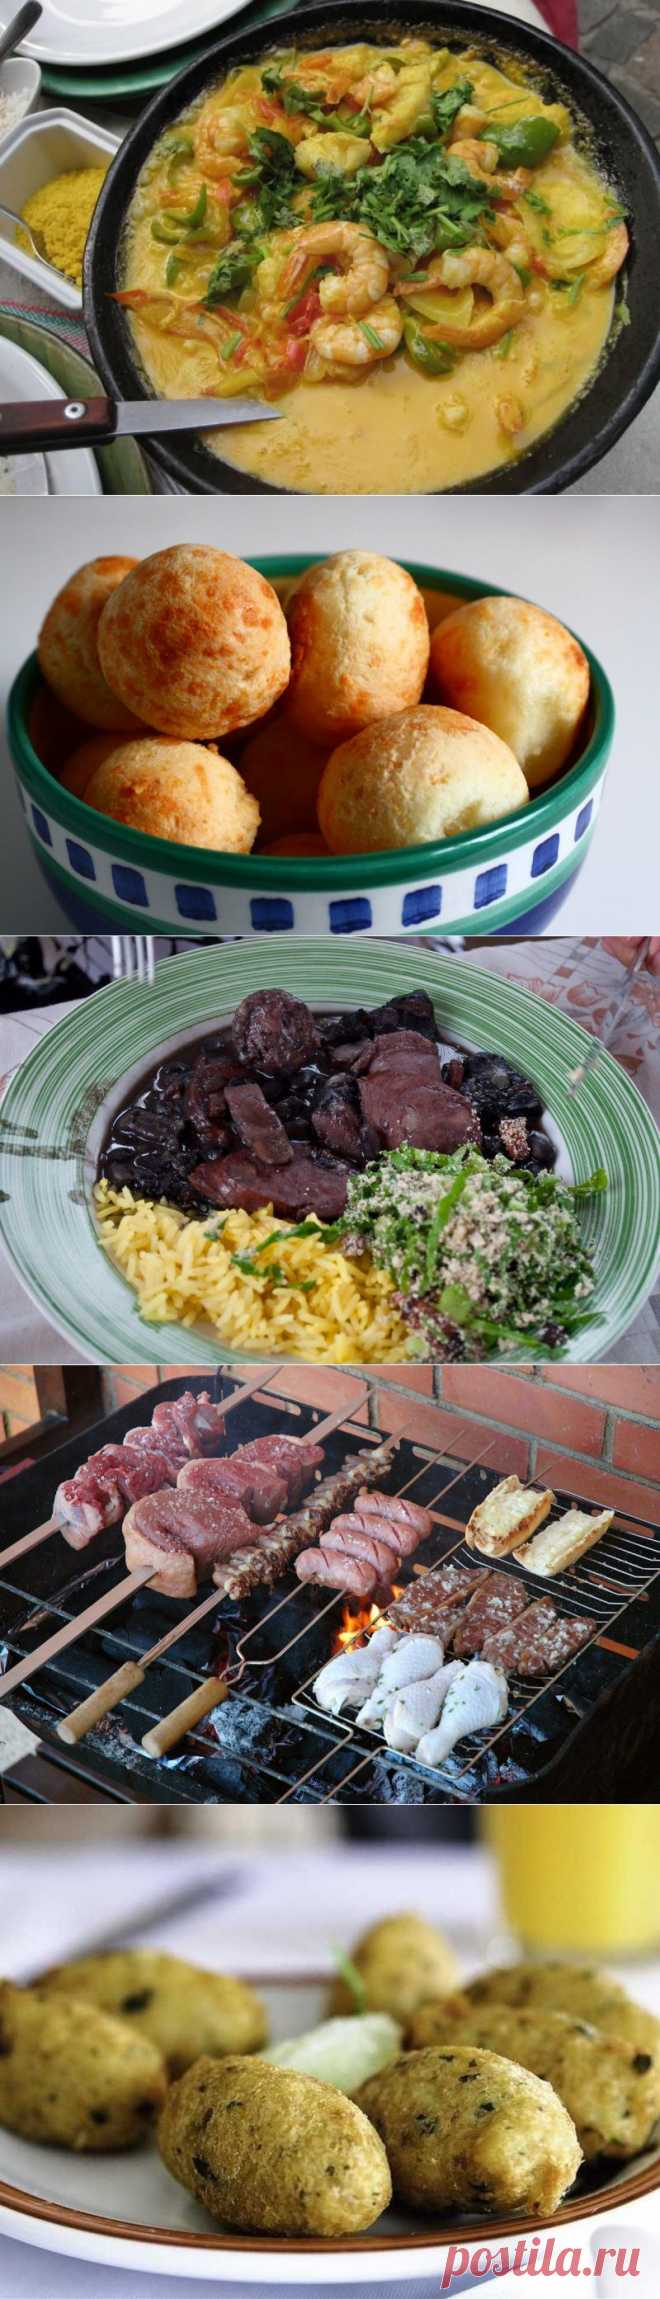 10 самых аппетитных бразильских национальных блюд • НОВОСТИ В ФОТОГРАФИЯХ